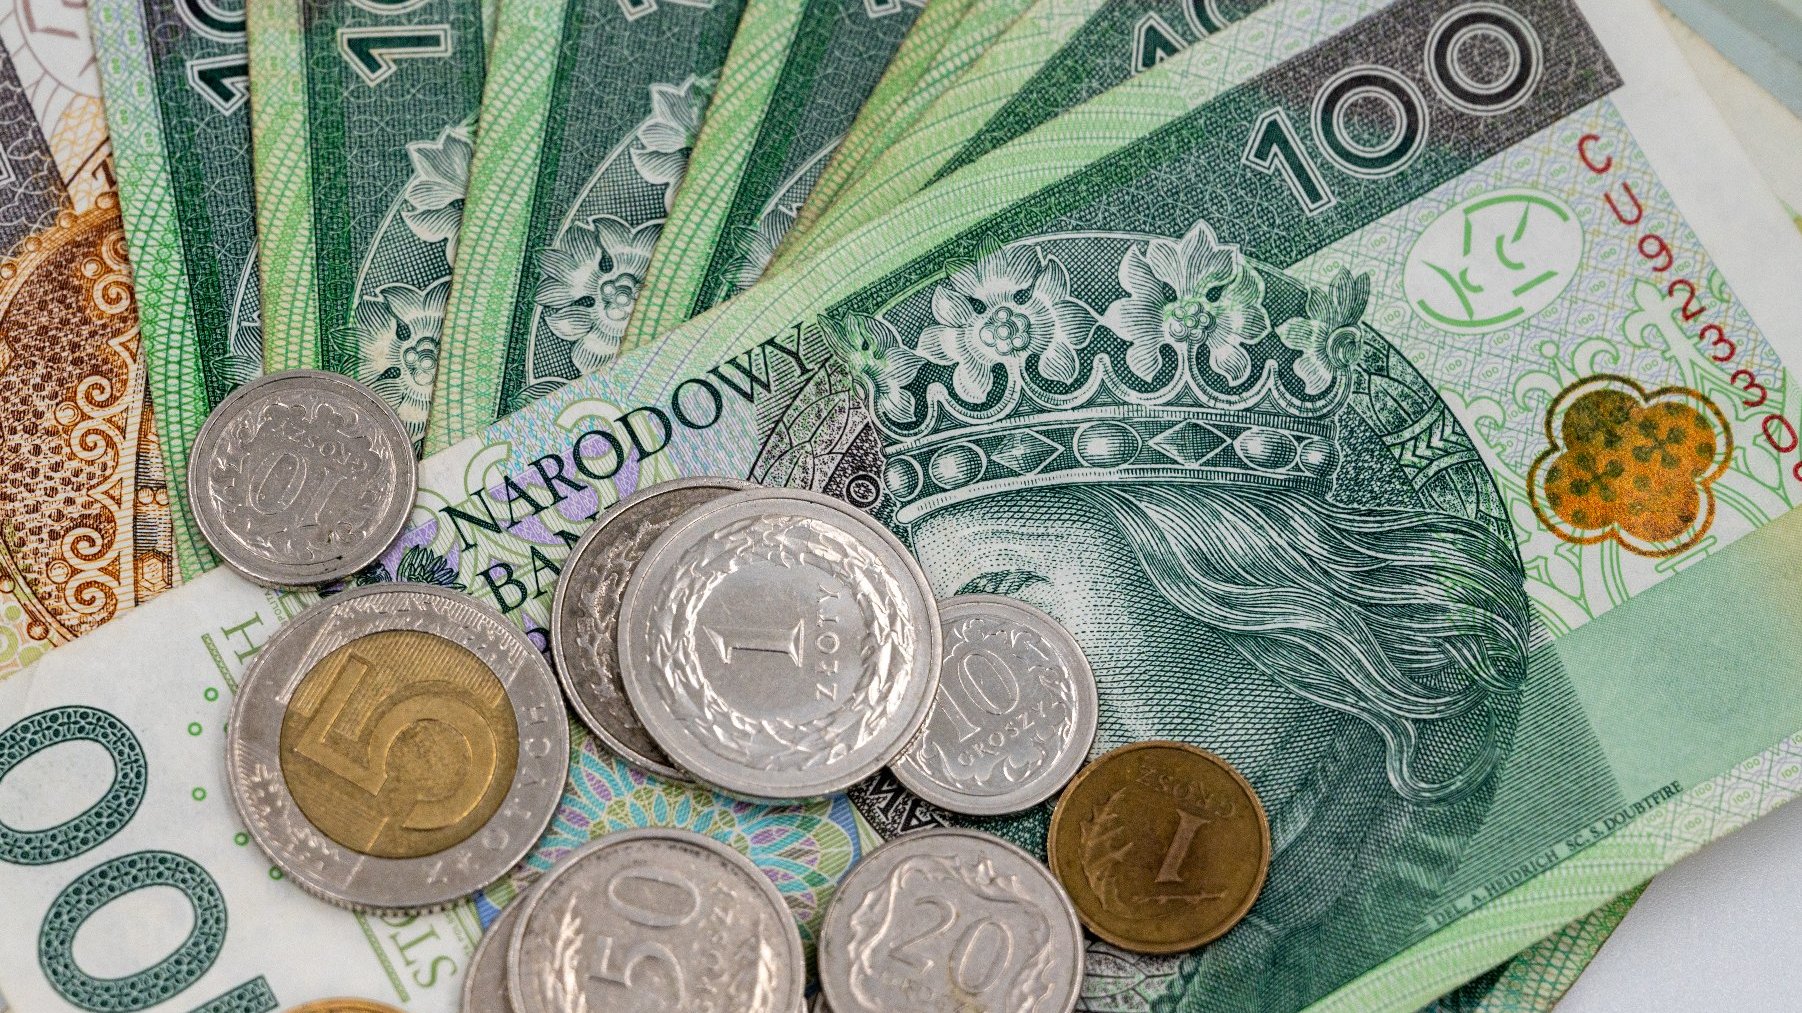 Zdjęcie przedstawia banknoty 100 zł oraz kilka monet o różnych nominałach.